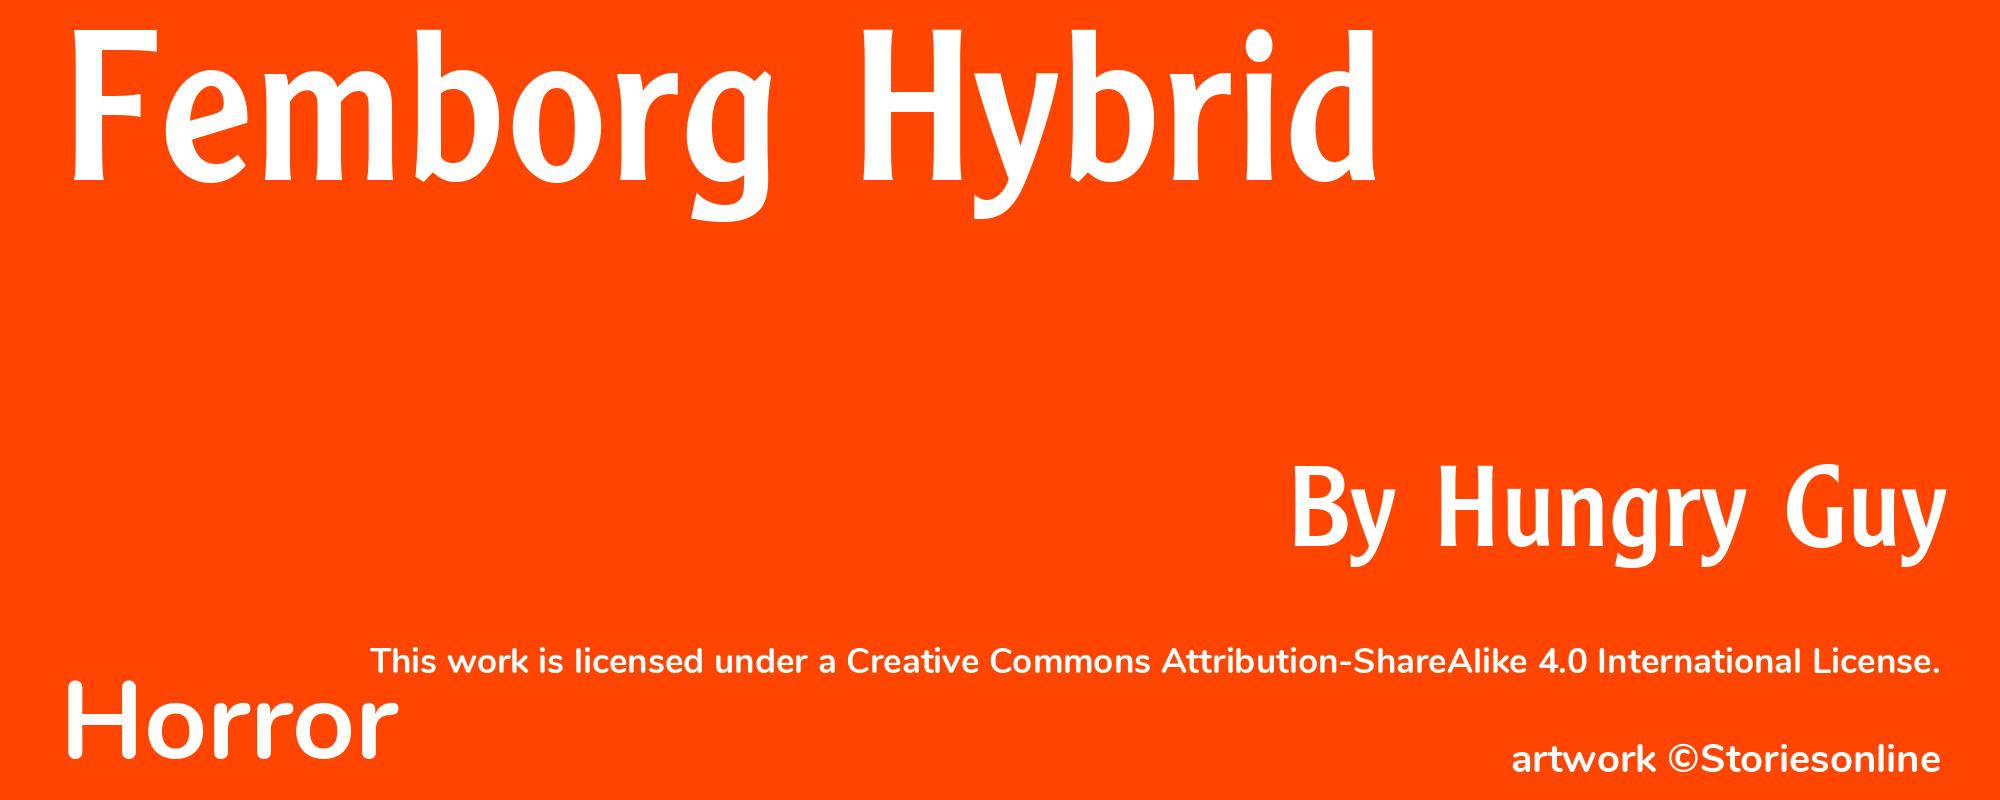 Femborg Hybrid - Cover